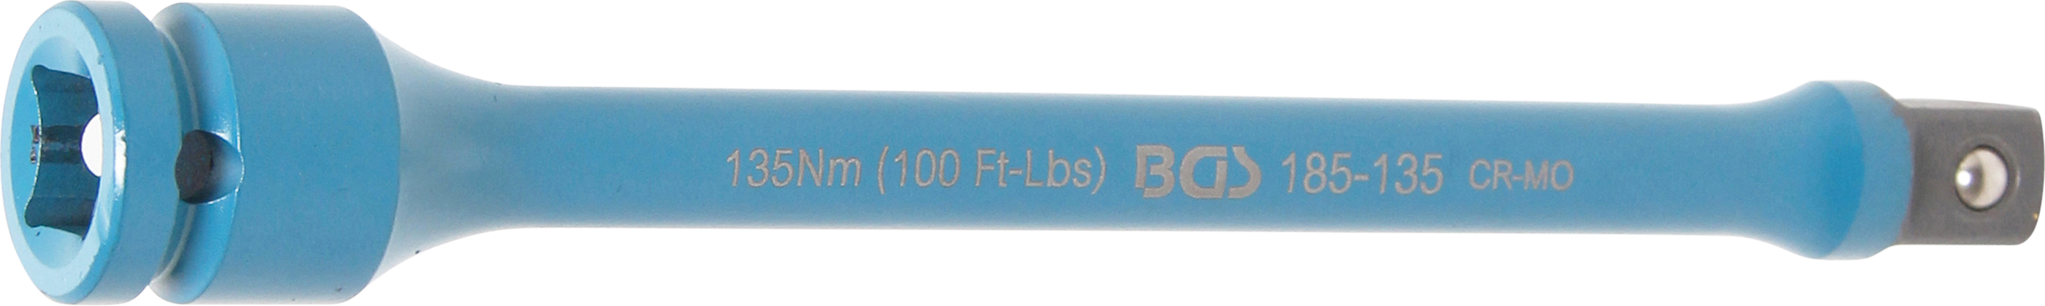 BGS 185-135 - Rallonge de torsion, 12,5 mm (1/2)